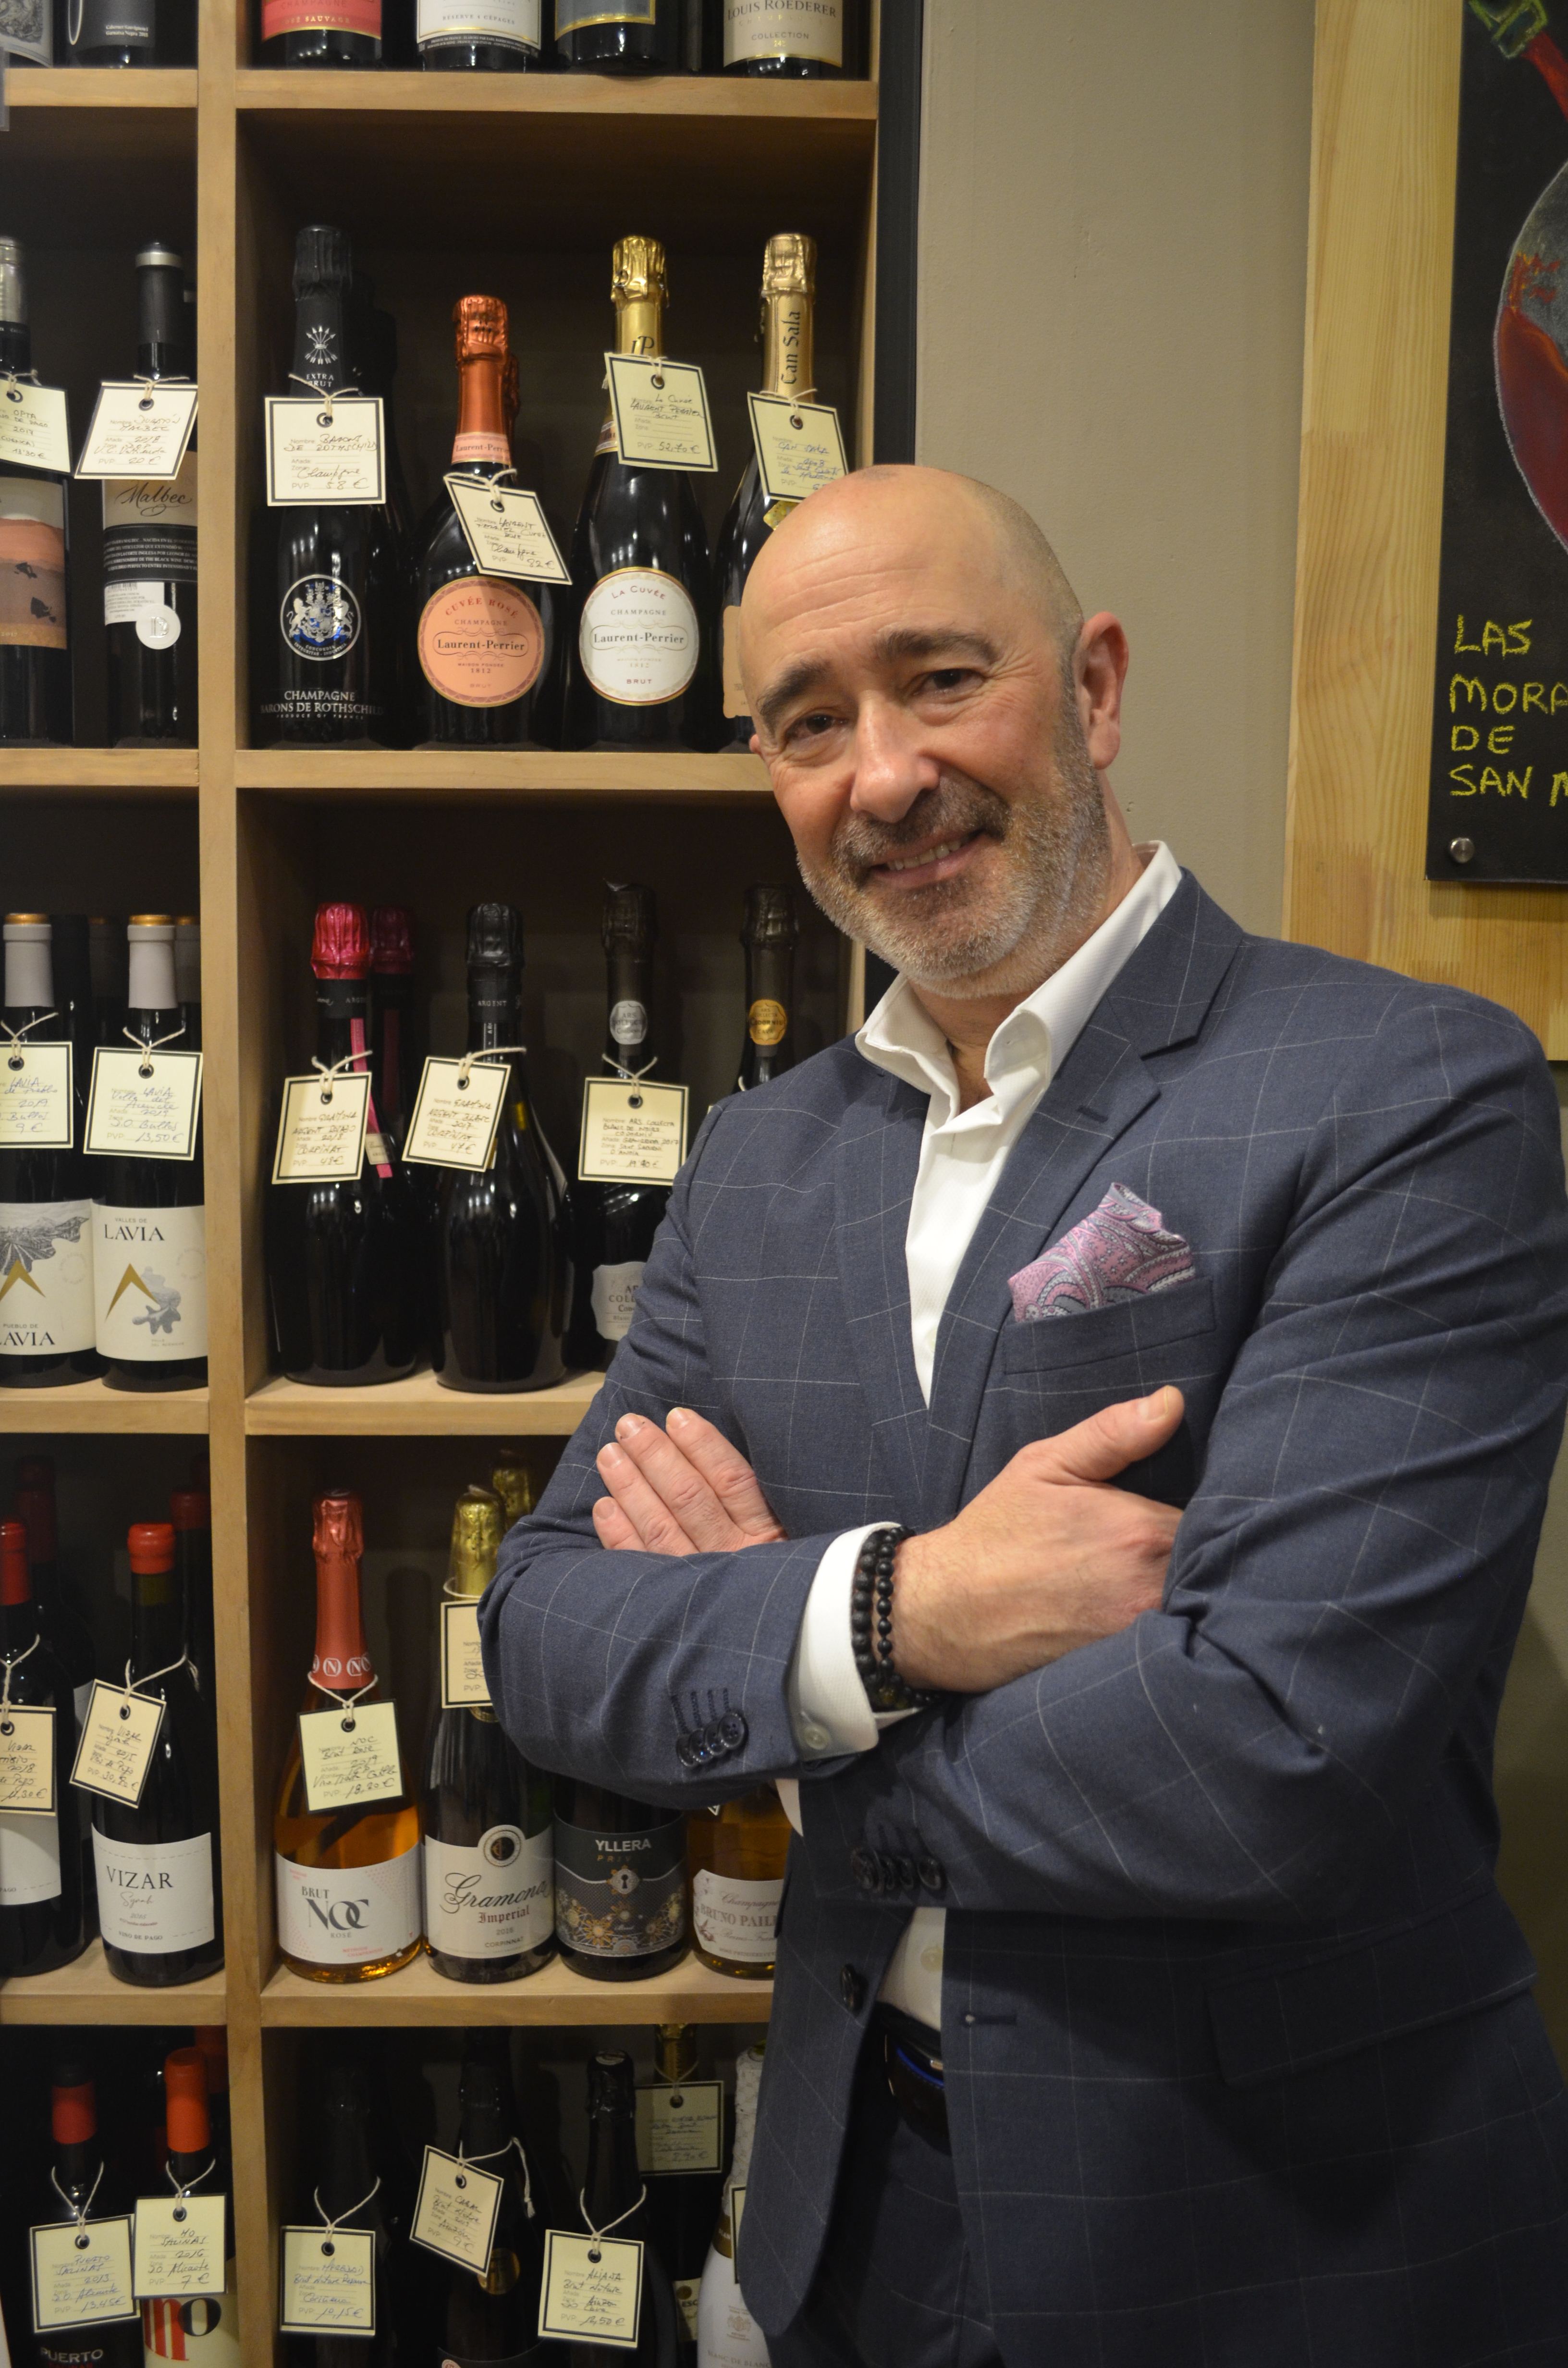 Vinopremier Zaragoza, el único bar de vinos de Aragón recomendado por la Guía Peñín, celebra su segundo aniversario